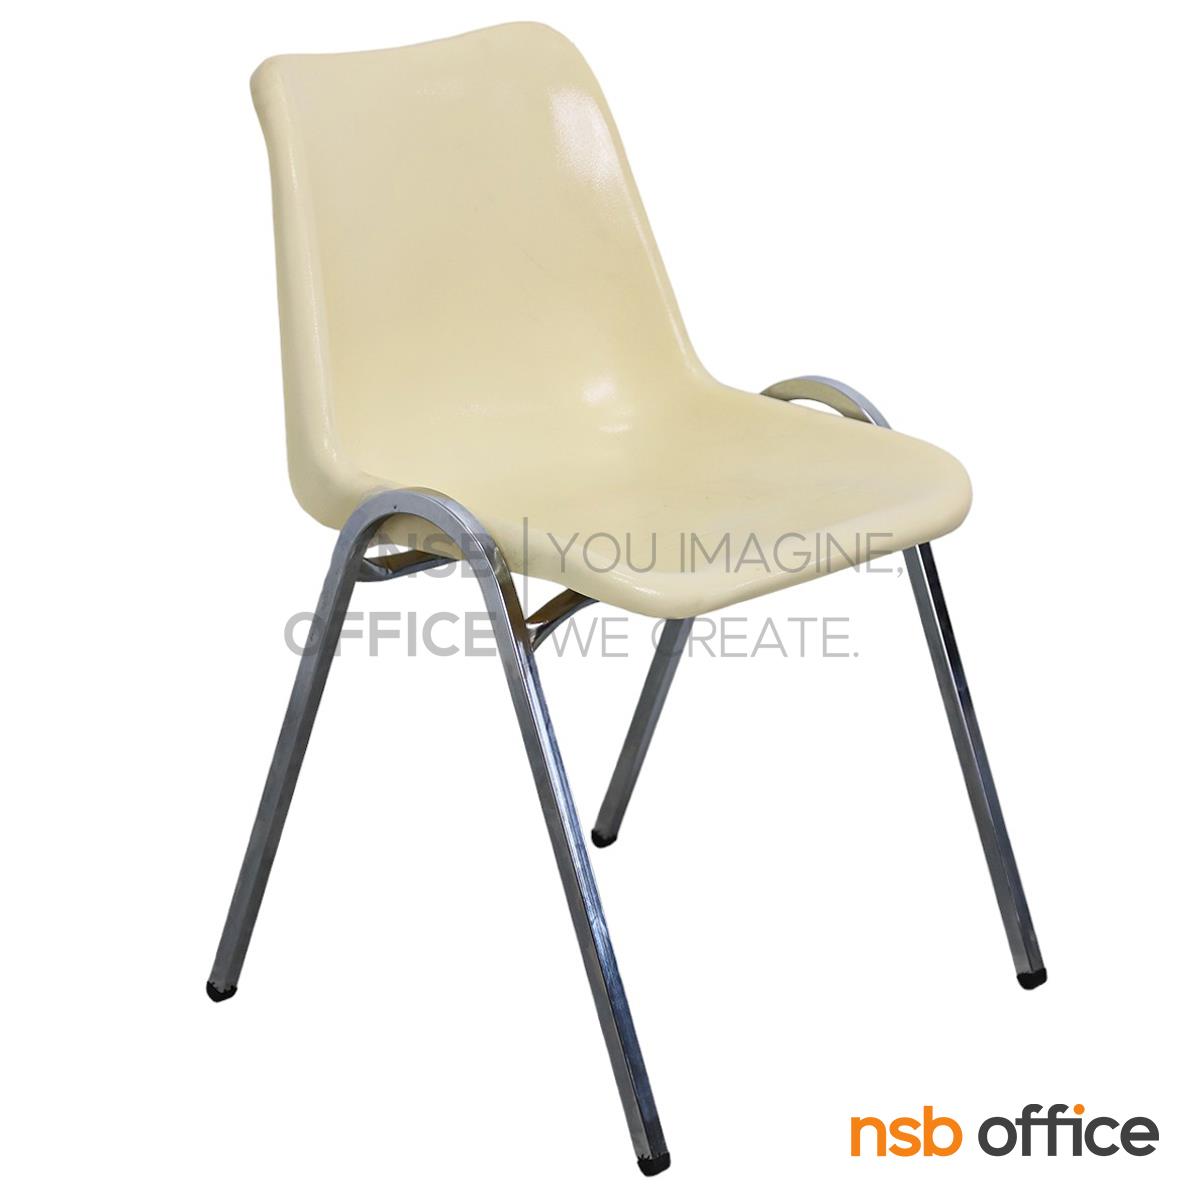 B05A204:เก้าอี้อเนกประสงค์เฟรมโพลี่ รุ่น Folke (โฟล์ก)  ขาเหล็กชุบโครเมี่ยม